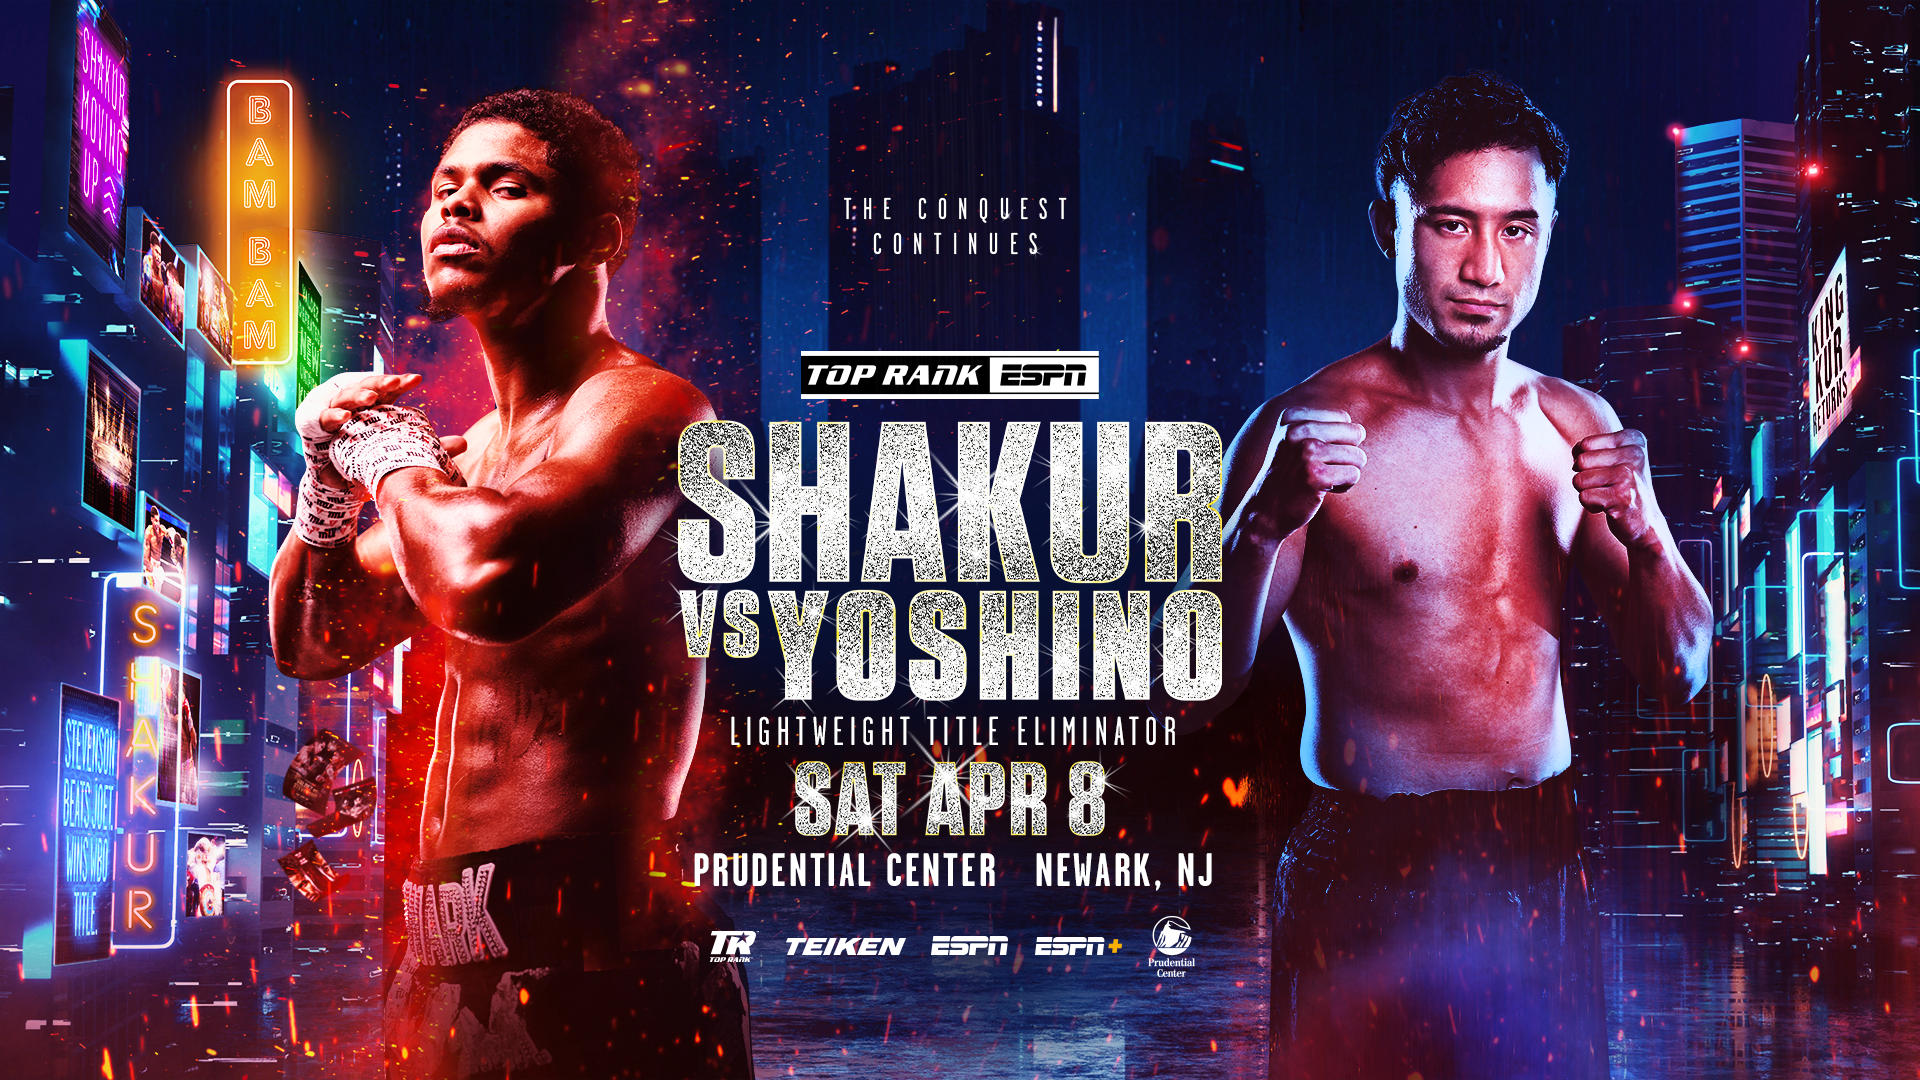 Shakur Stevenson regresa a casa el 8 de abril contra Shuichiro Yoshino en una pelea estelar en peso ligero desde el Prudential Center de Newark, Nueva Jersey EN VIVO por ESPN